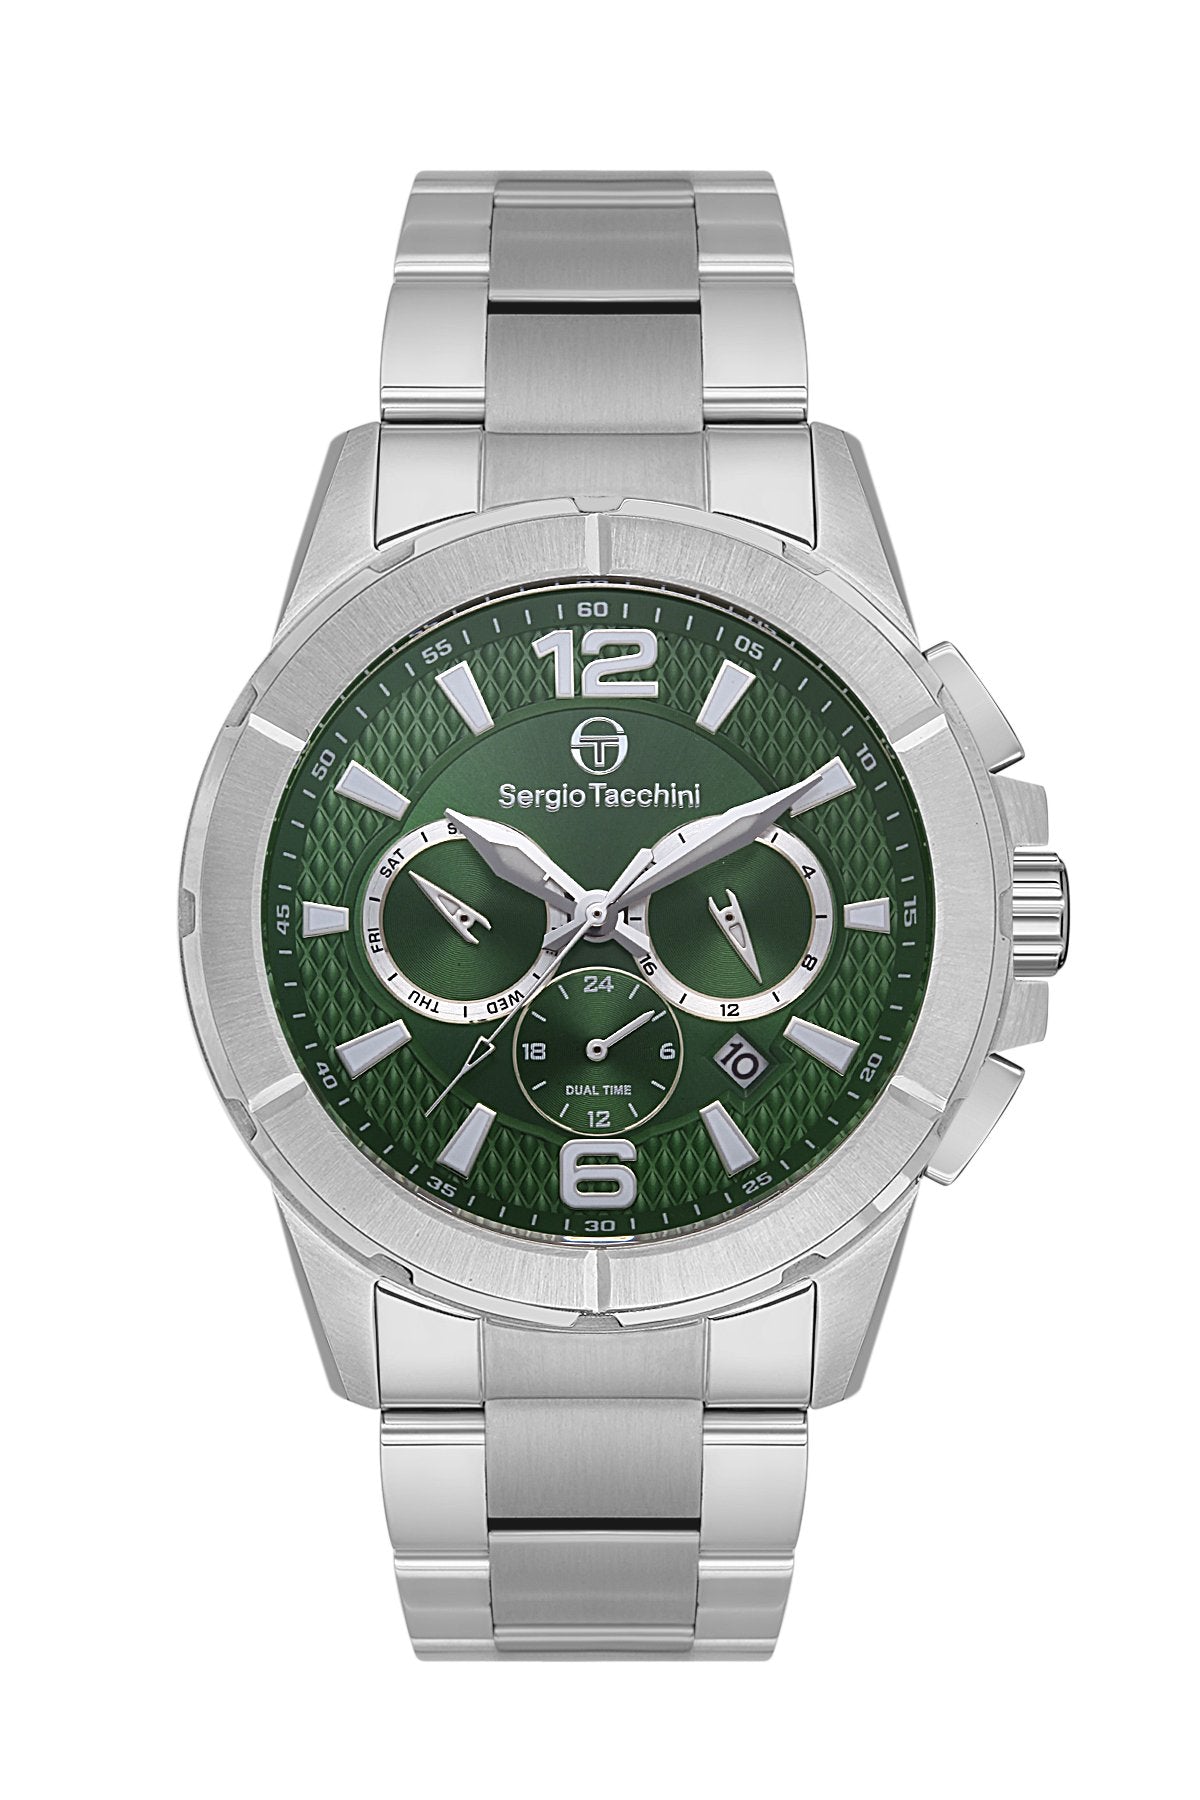 | Sergio Tacchini Men's Watch ST.1.10403-4 - Takreem Fusion | - #sho| Sergio Tacchini Men's Watch ST.1.10403-4 - Takreem Fusion |p_name#| Sergio Tacchini Men's Watch ST.1.10403-4 - Takreem Fusion |WatchSergio TacchiniTakreem.joST.1.10403-48682308152852SilverStainless SteelMen| Sergio Tacchini Men's Watch ST.1.10403-4 - Takreem Fusion |